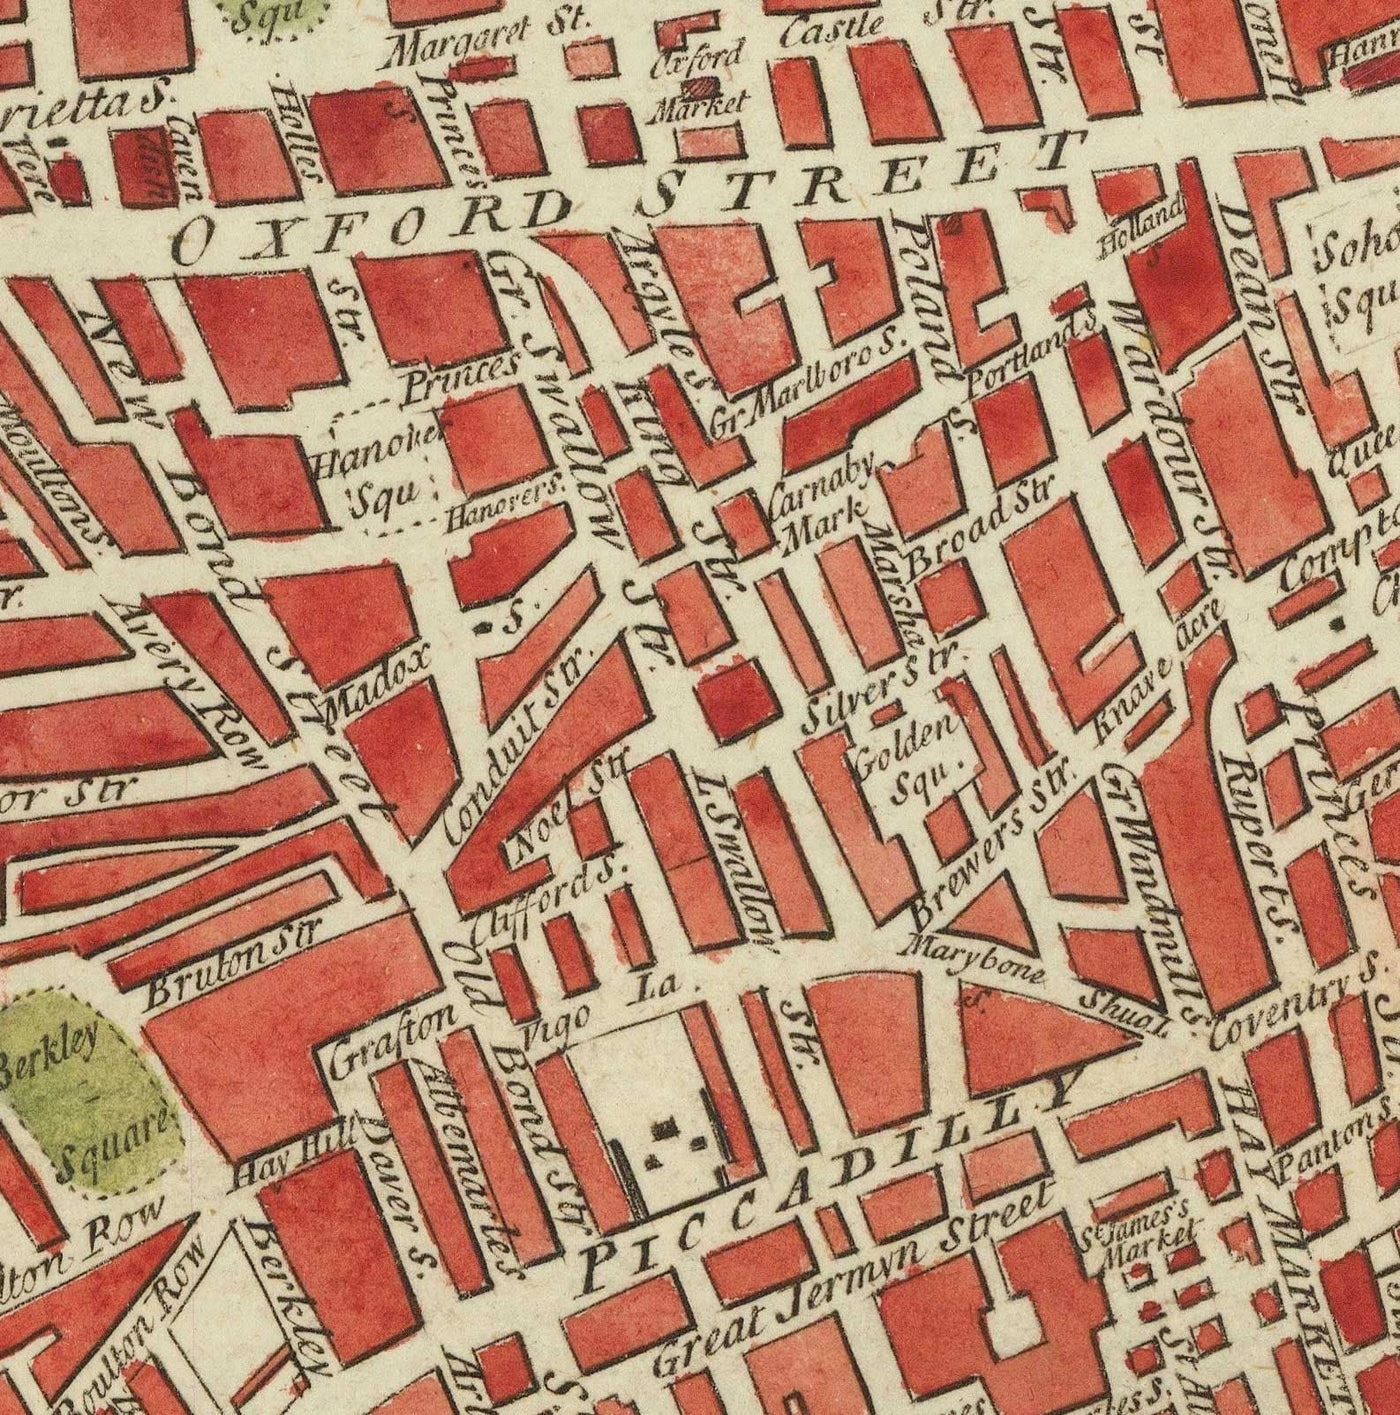 Seltene alte Karte von London von Hogg, 1784 - Westminster, Stadt London, Soho, Holborn, Covent Garden,